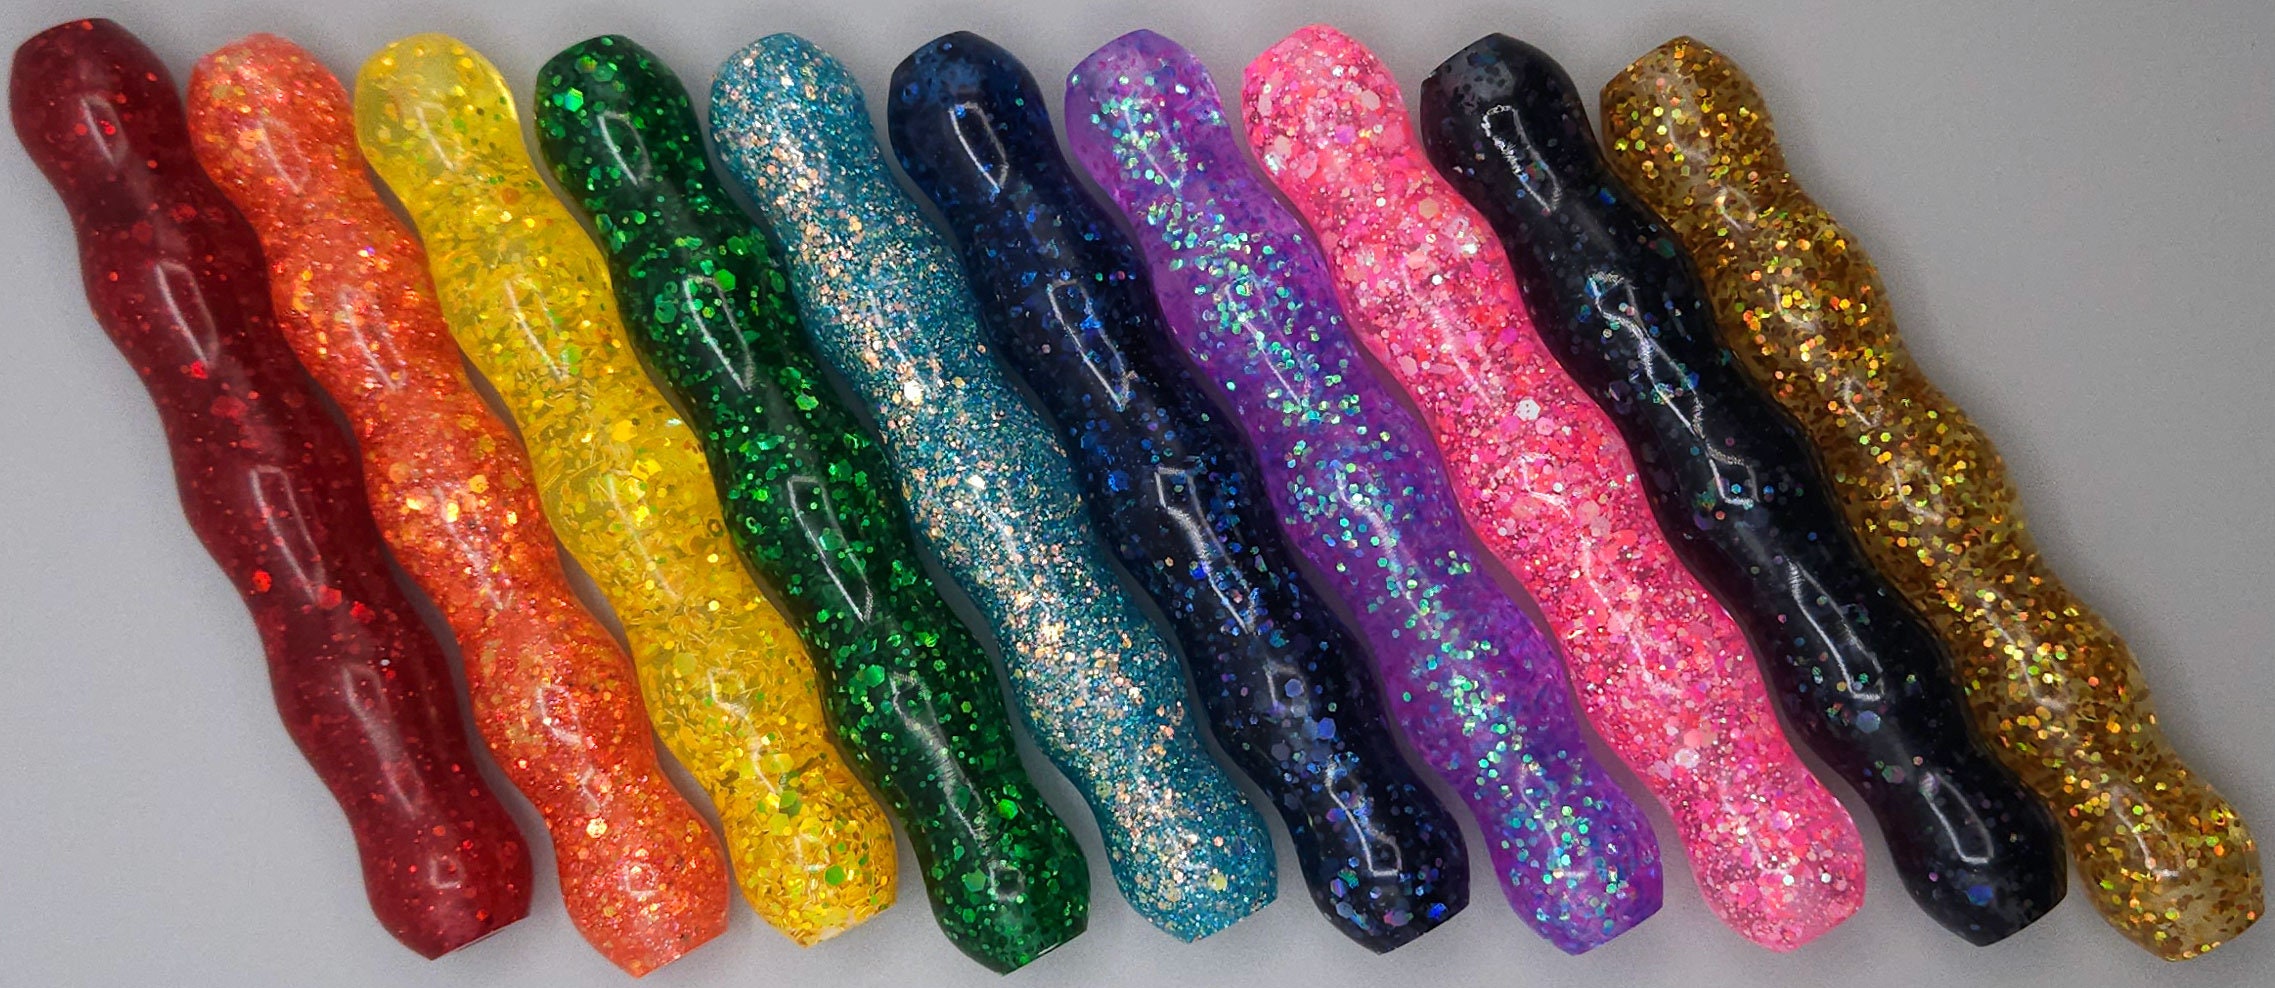 Rainbow Diamond Pens – Olly-Olly